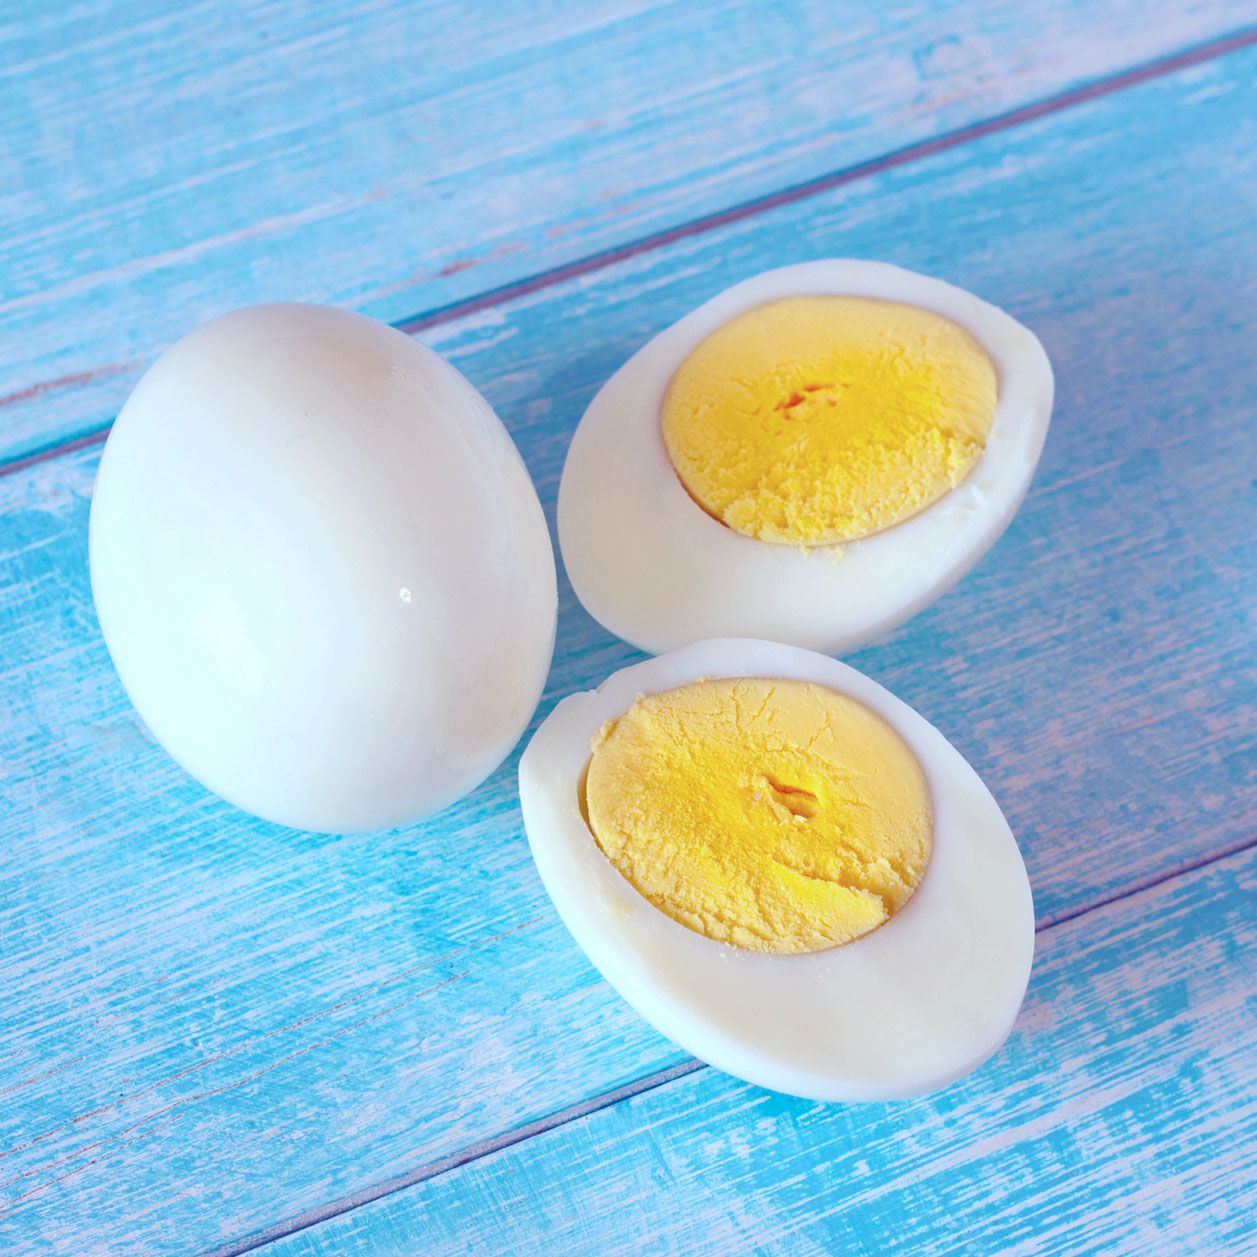 Lebensmittel, die keine Kohlenhydrate enthalten: Eier sind absolute Nährstoff-Superhelden